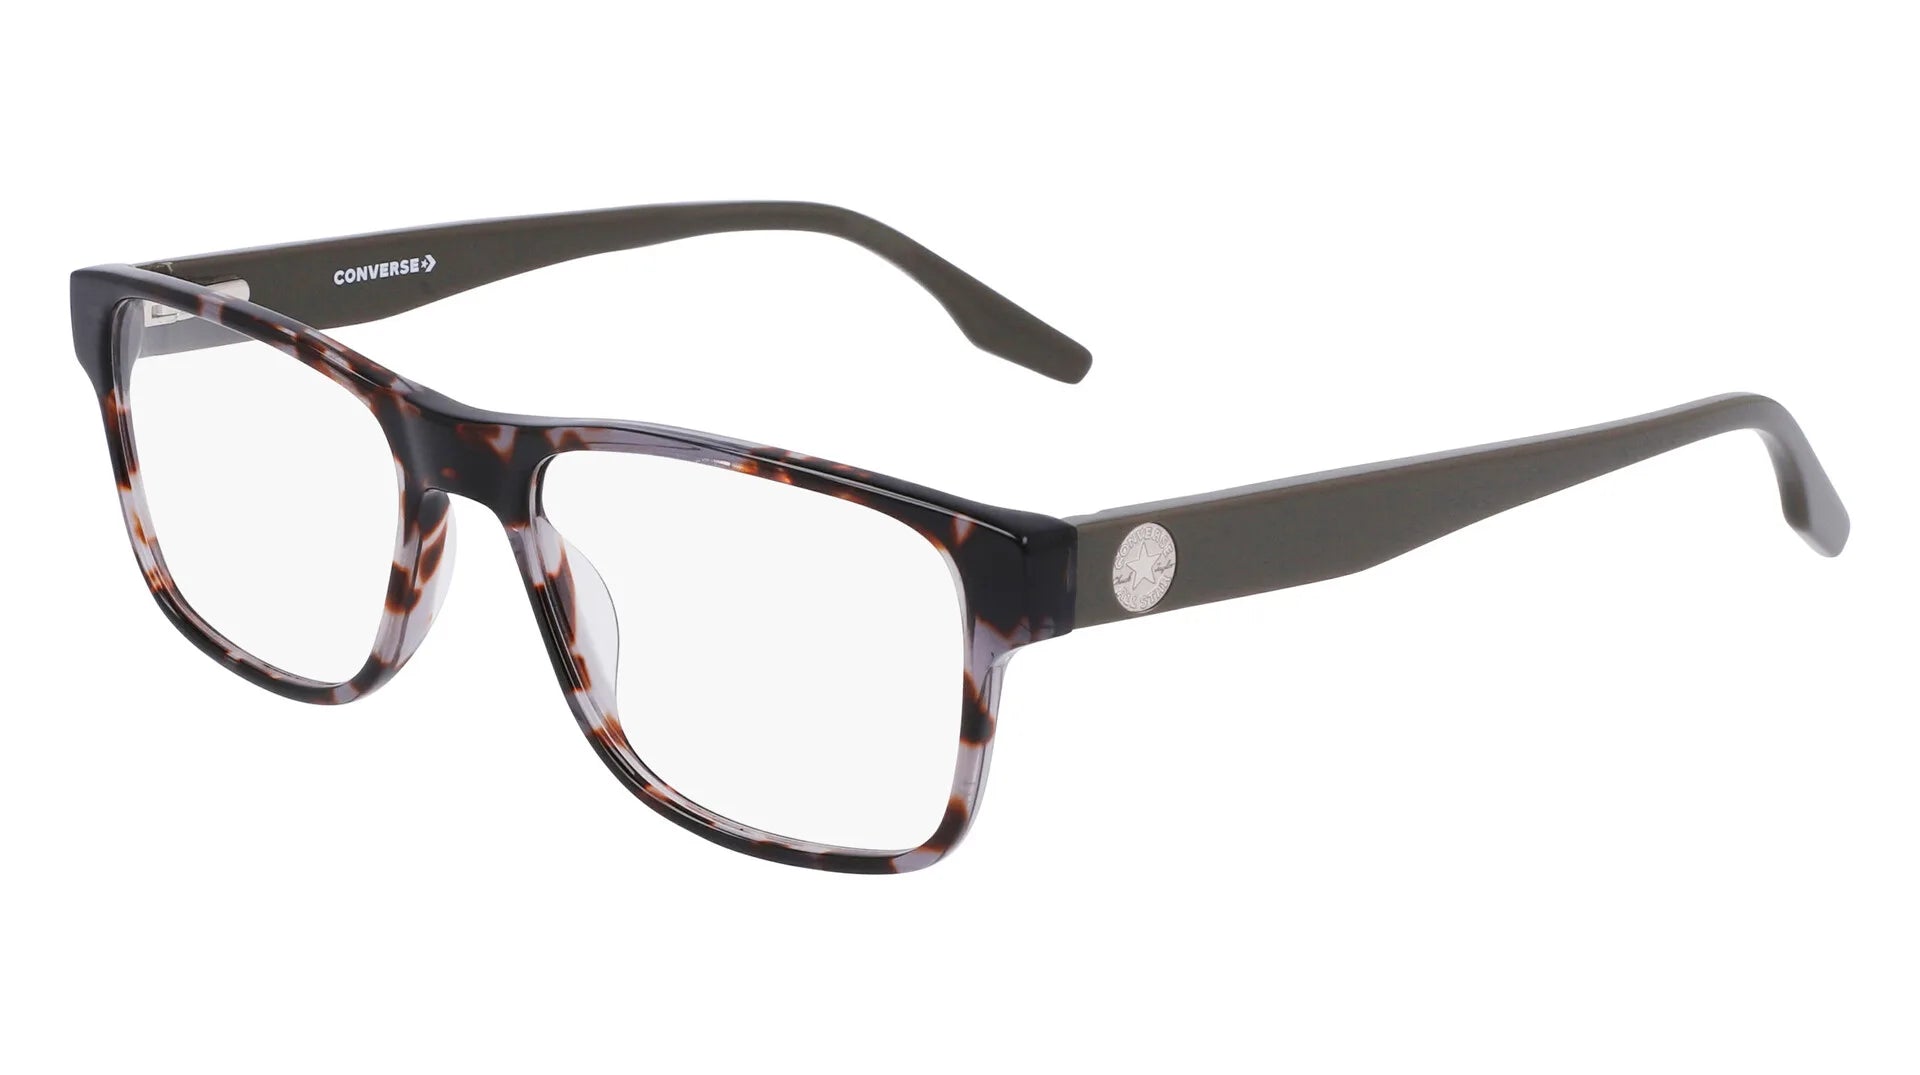 Converse CV5063 Eyeglasses Charcoal Tortoise